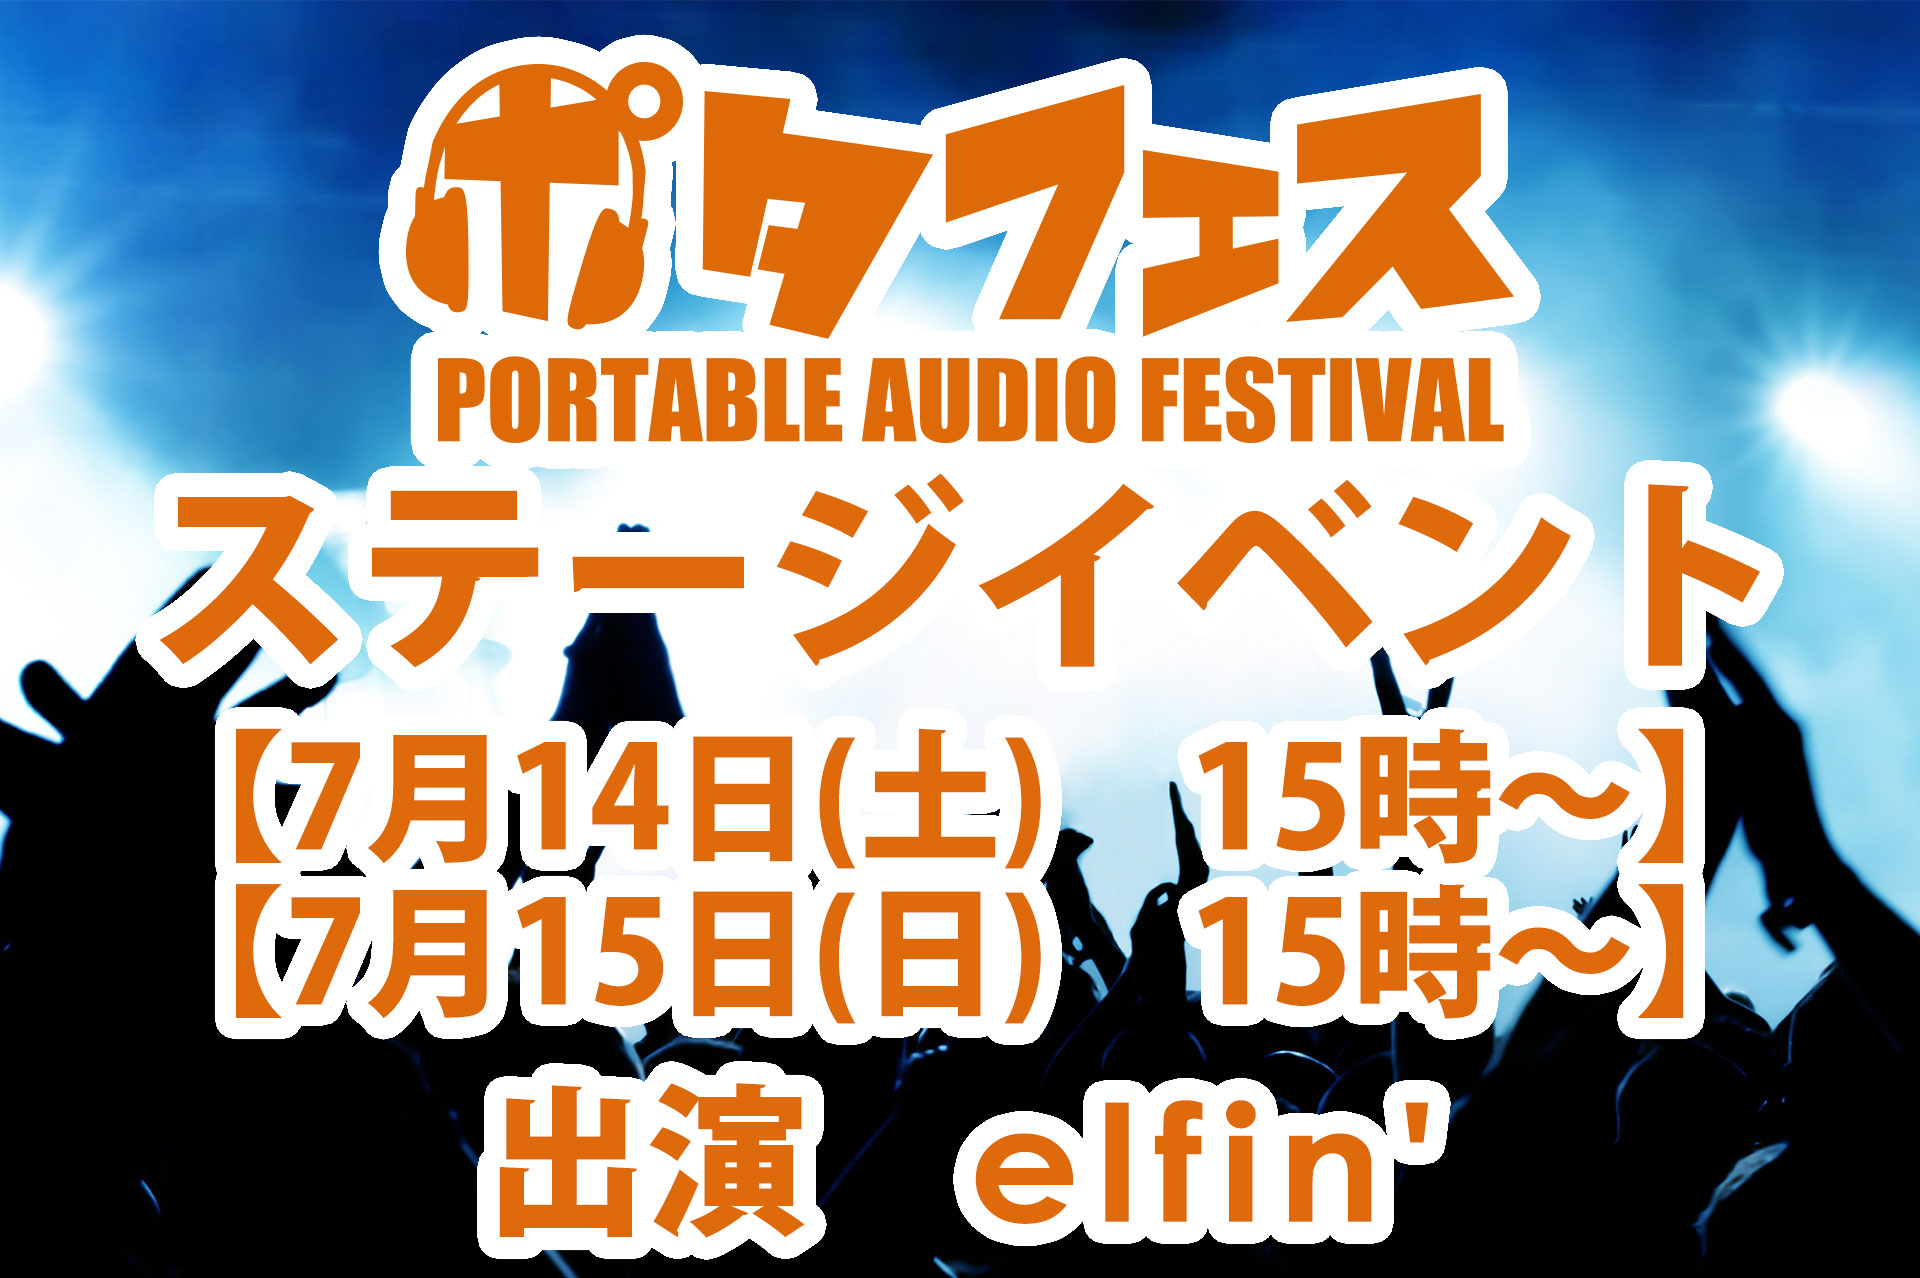 【ステージ情報】ポタフェス2018イメージアーティストのelfin’さんのステージが決定！